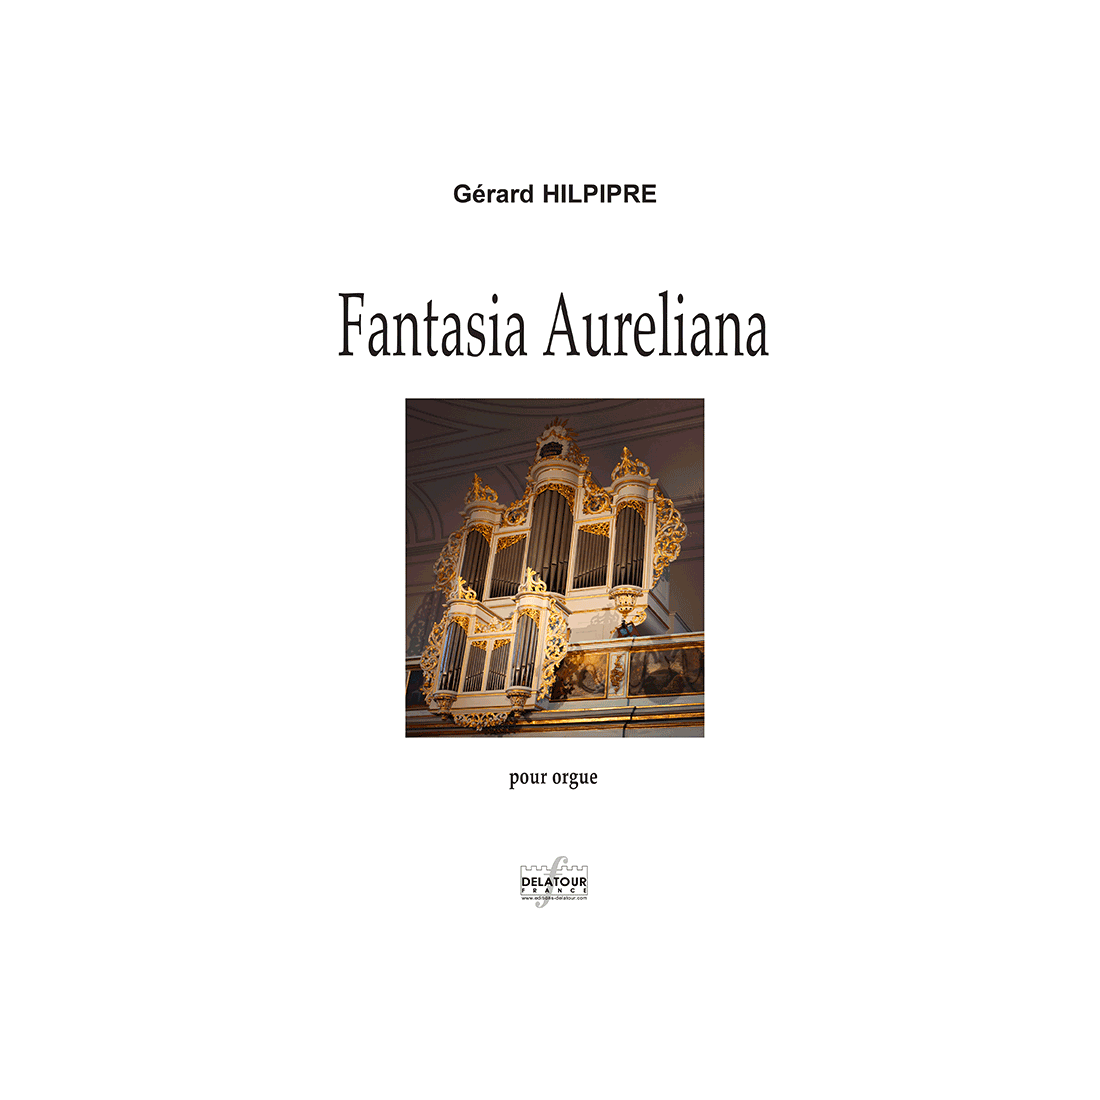 Fantasia aureliana for organ